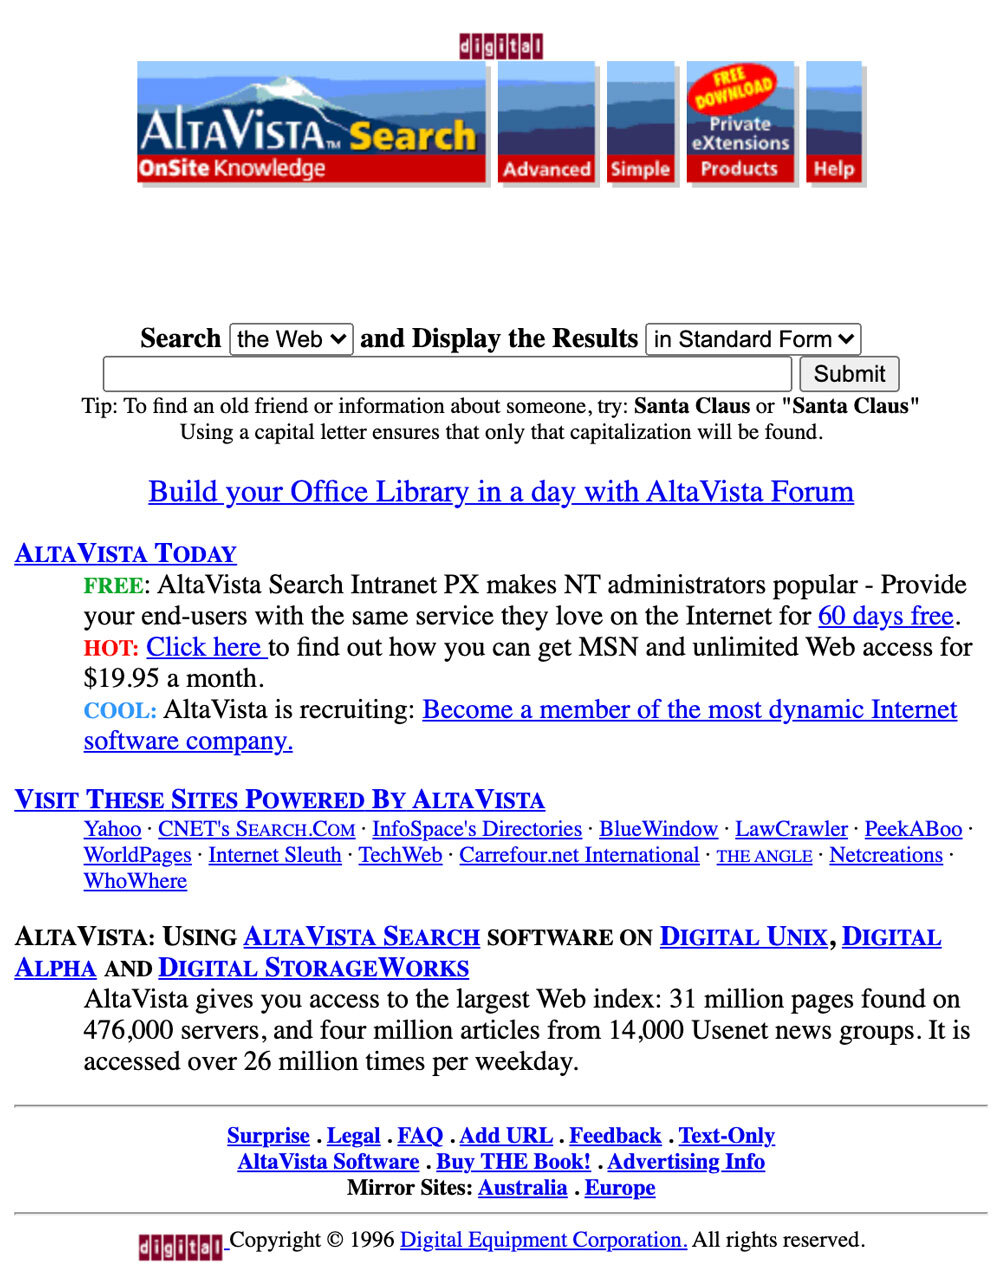 史上第一个好用的搜索引擎 AltaVista，跌入“数字深渊”